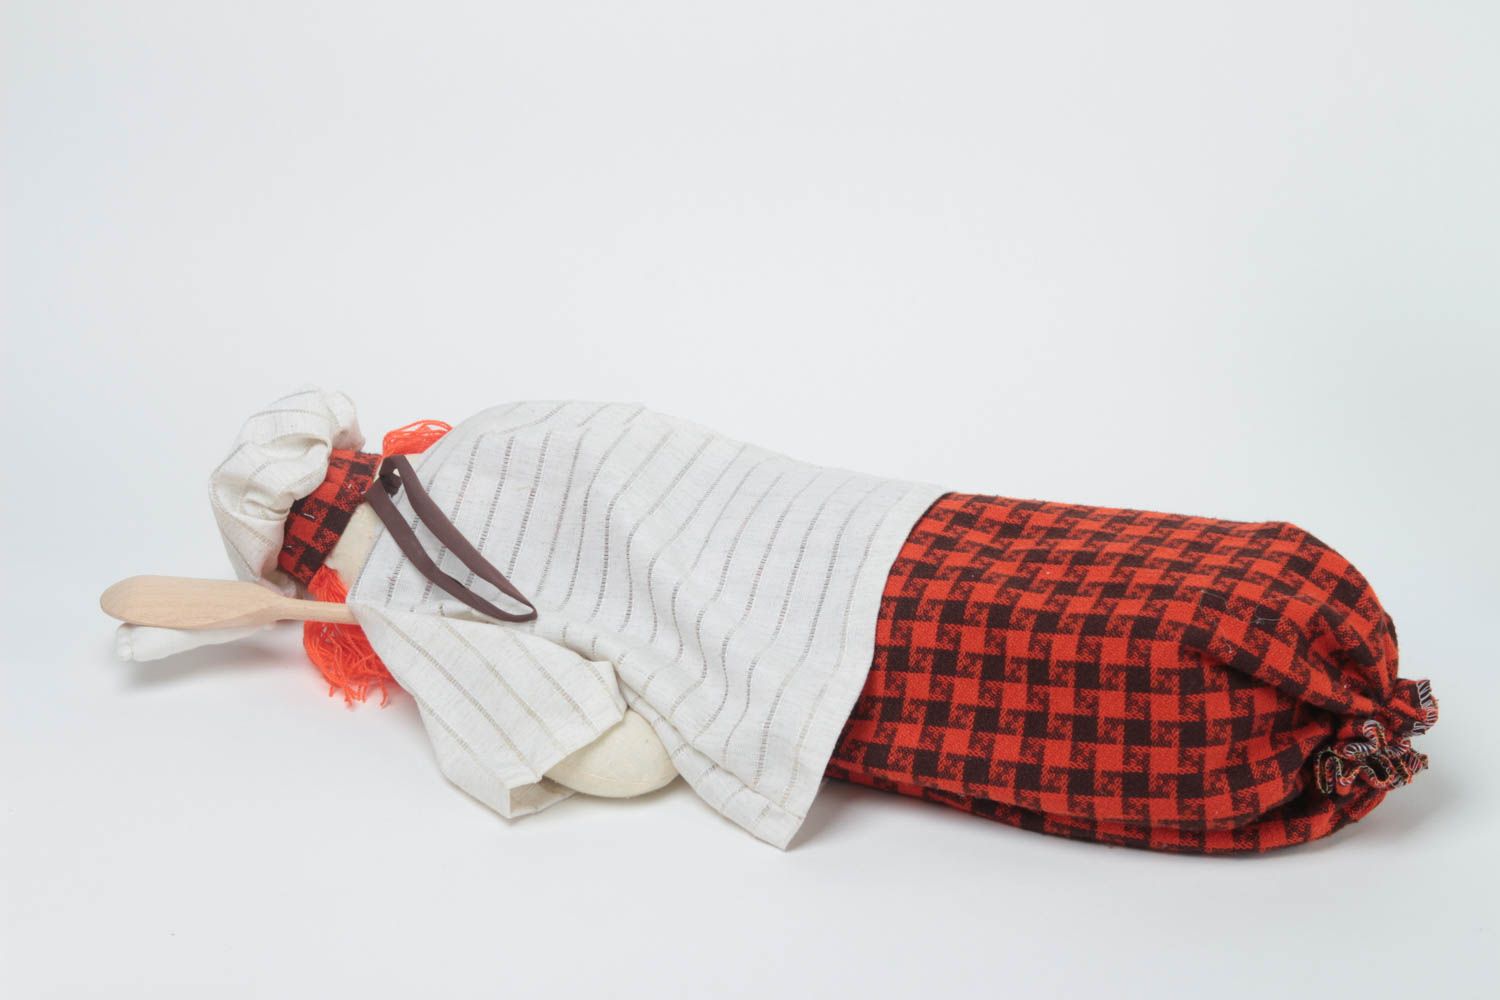 Забавная пакетница из ткани сшитая в виде куклы Повар для декора ручная работа фото 4